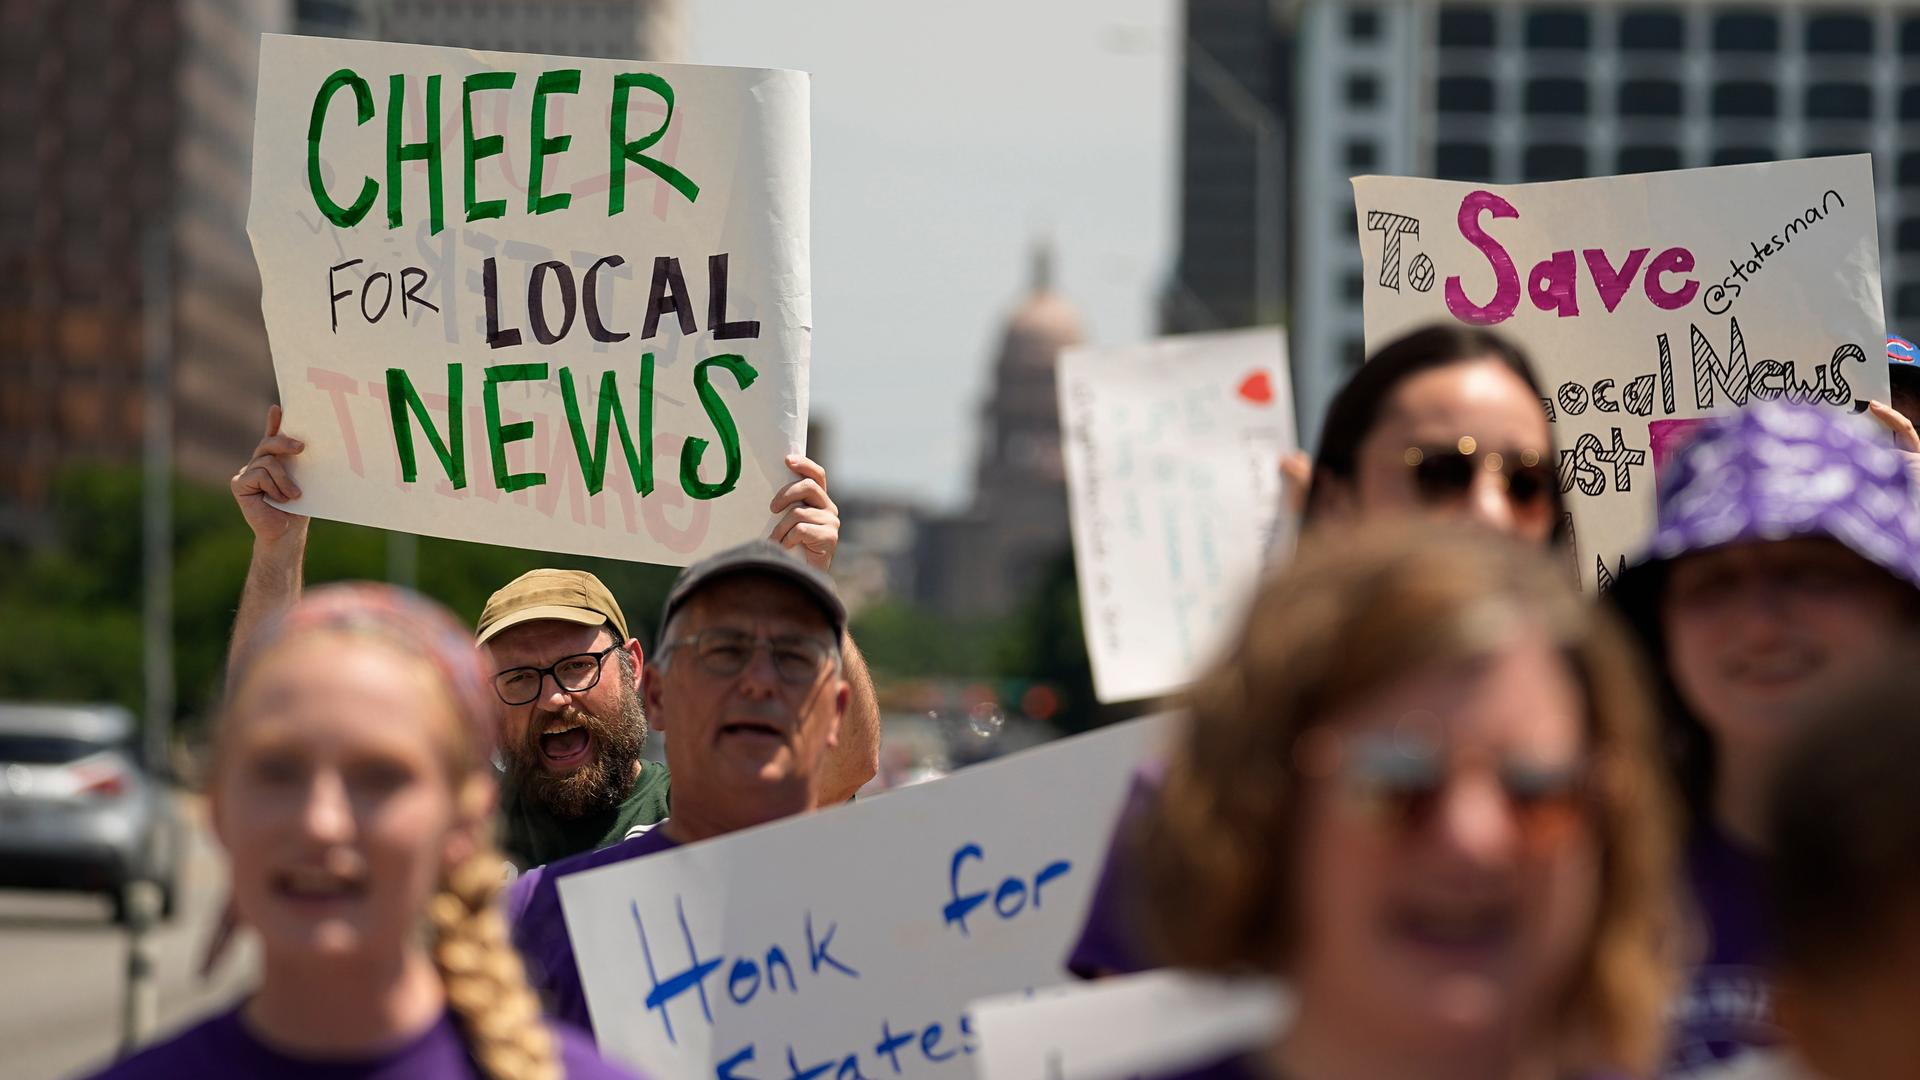 Beschäftigte des "Austin American Statesman" demonstrieren in Austin im US-Bundesstaat Texas. Ein Mann hält ein Schild mit der Aufschrift: "Cheer For Local News" - ein Hoch auf die Lokalnachrichten.